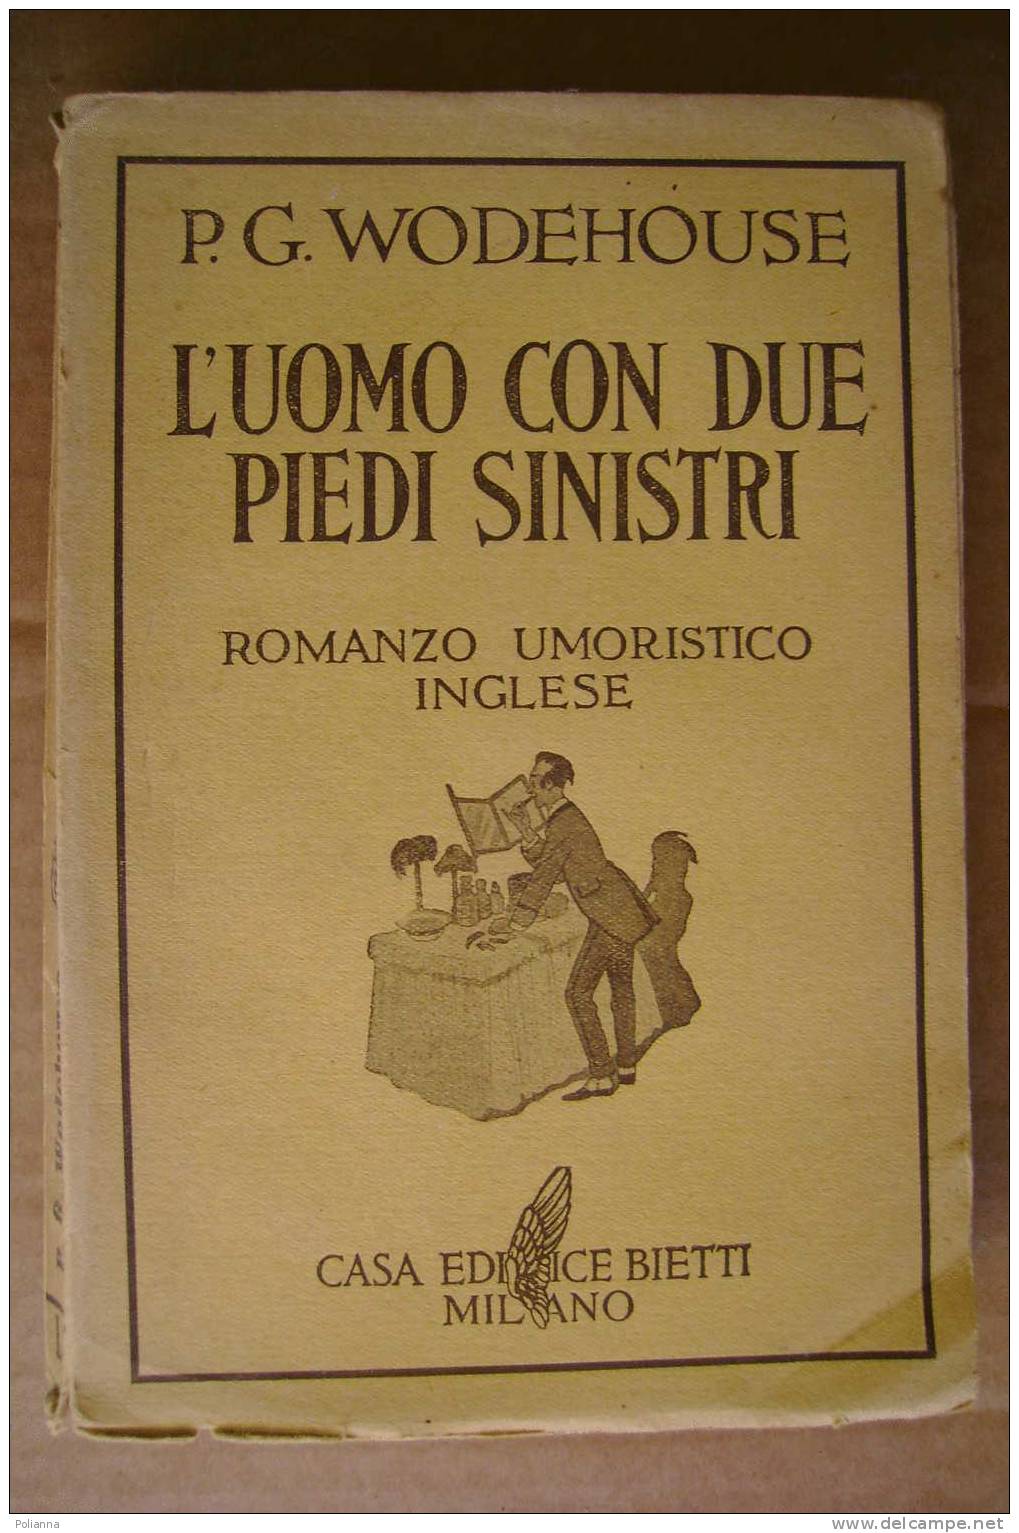 PDK/37  Wodehouse L'UOMO CON DUE PIEDI SINISTRI Casa Editrice Bietti 1938/romanzo Umoristico Inglese - Anciens